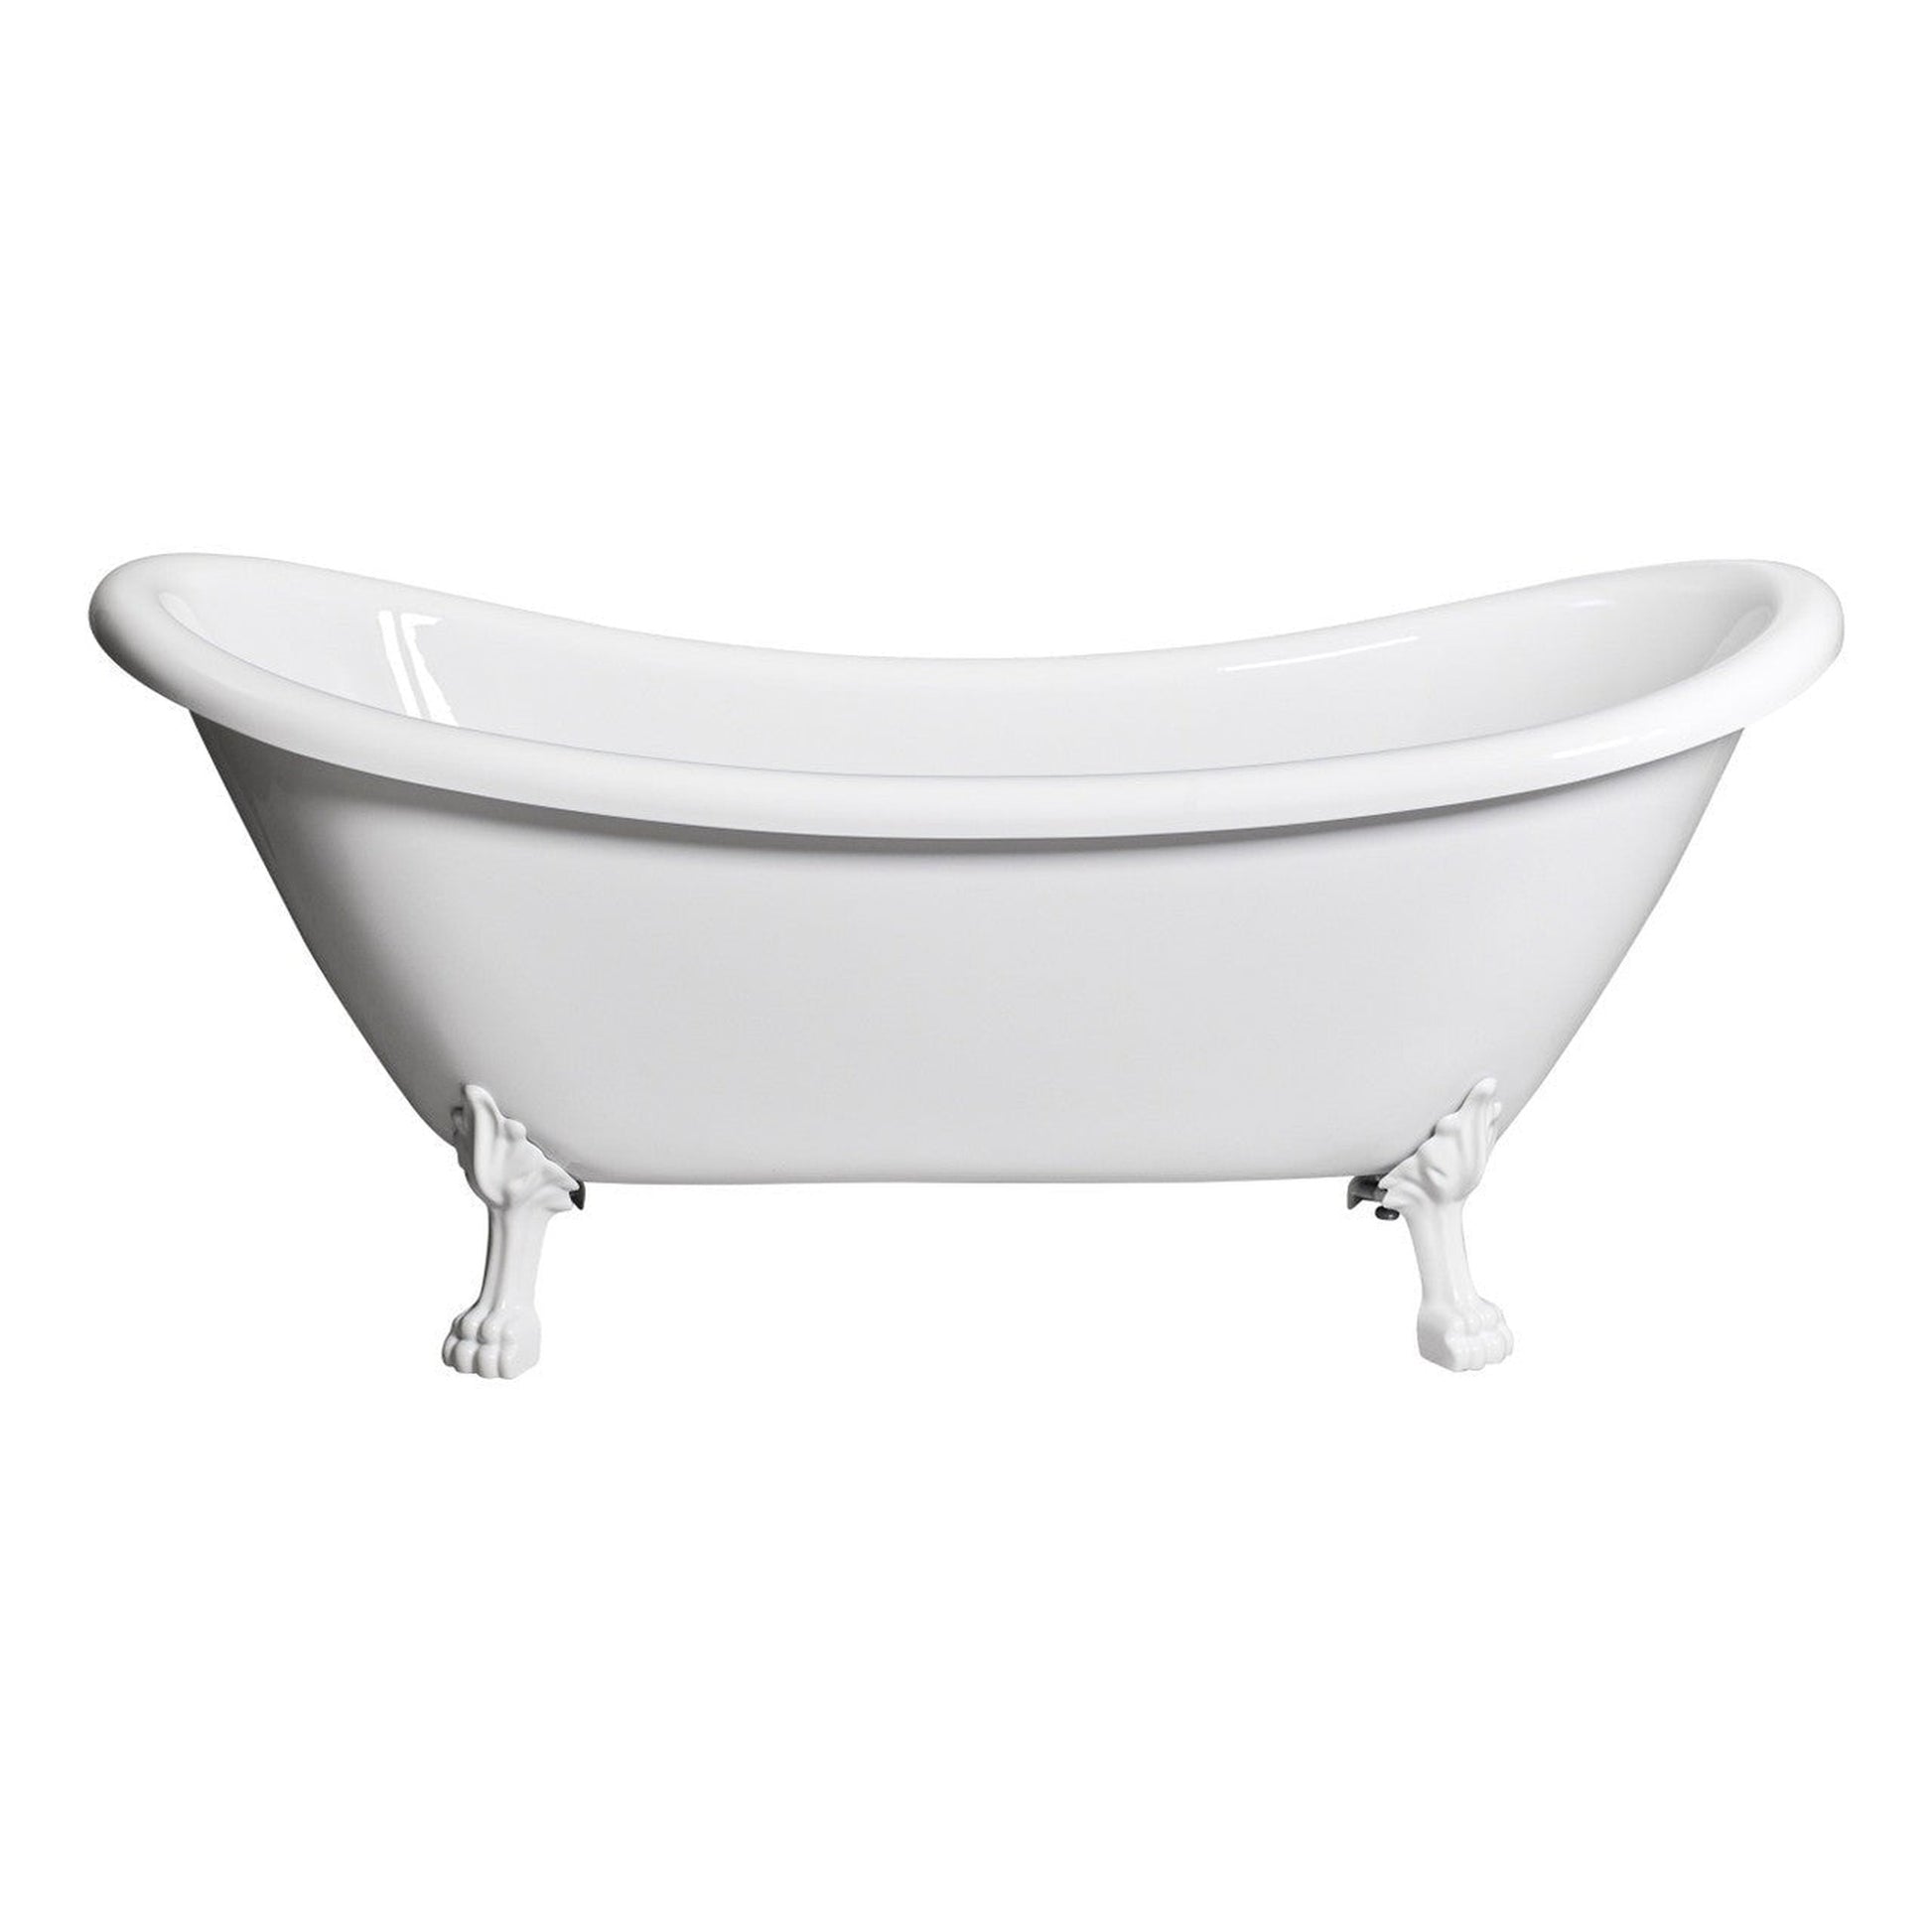 Castello USA Daphne 70" White Acrylic Freestanding Bathtub With White Feet and Drain